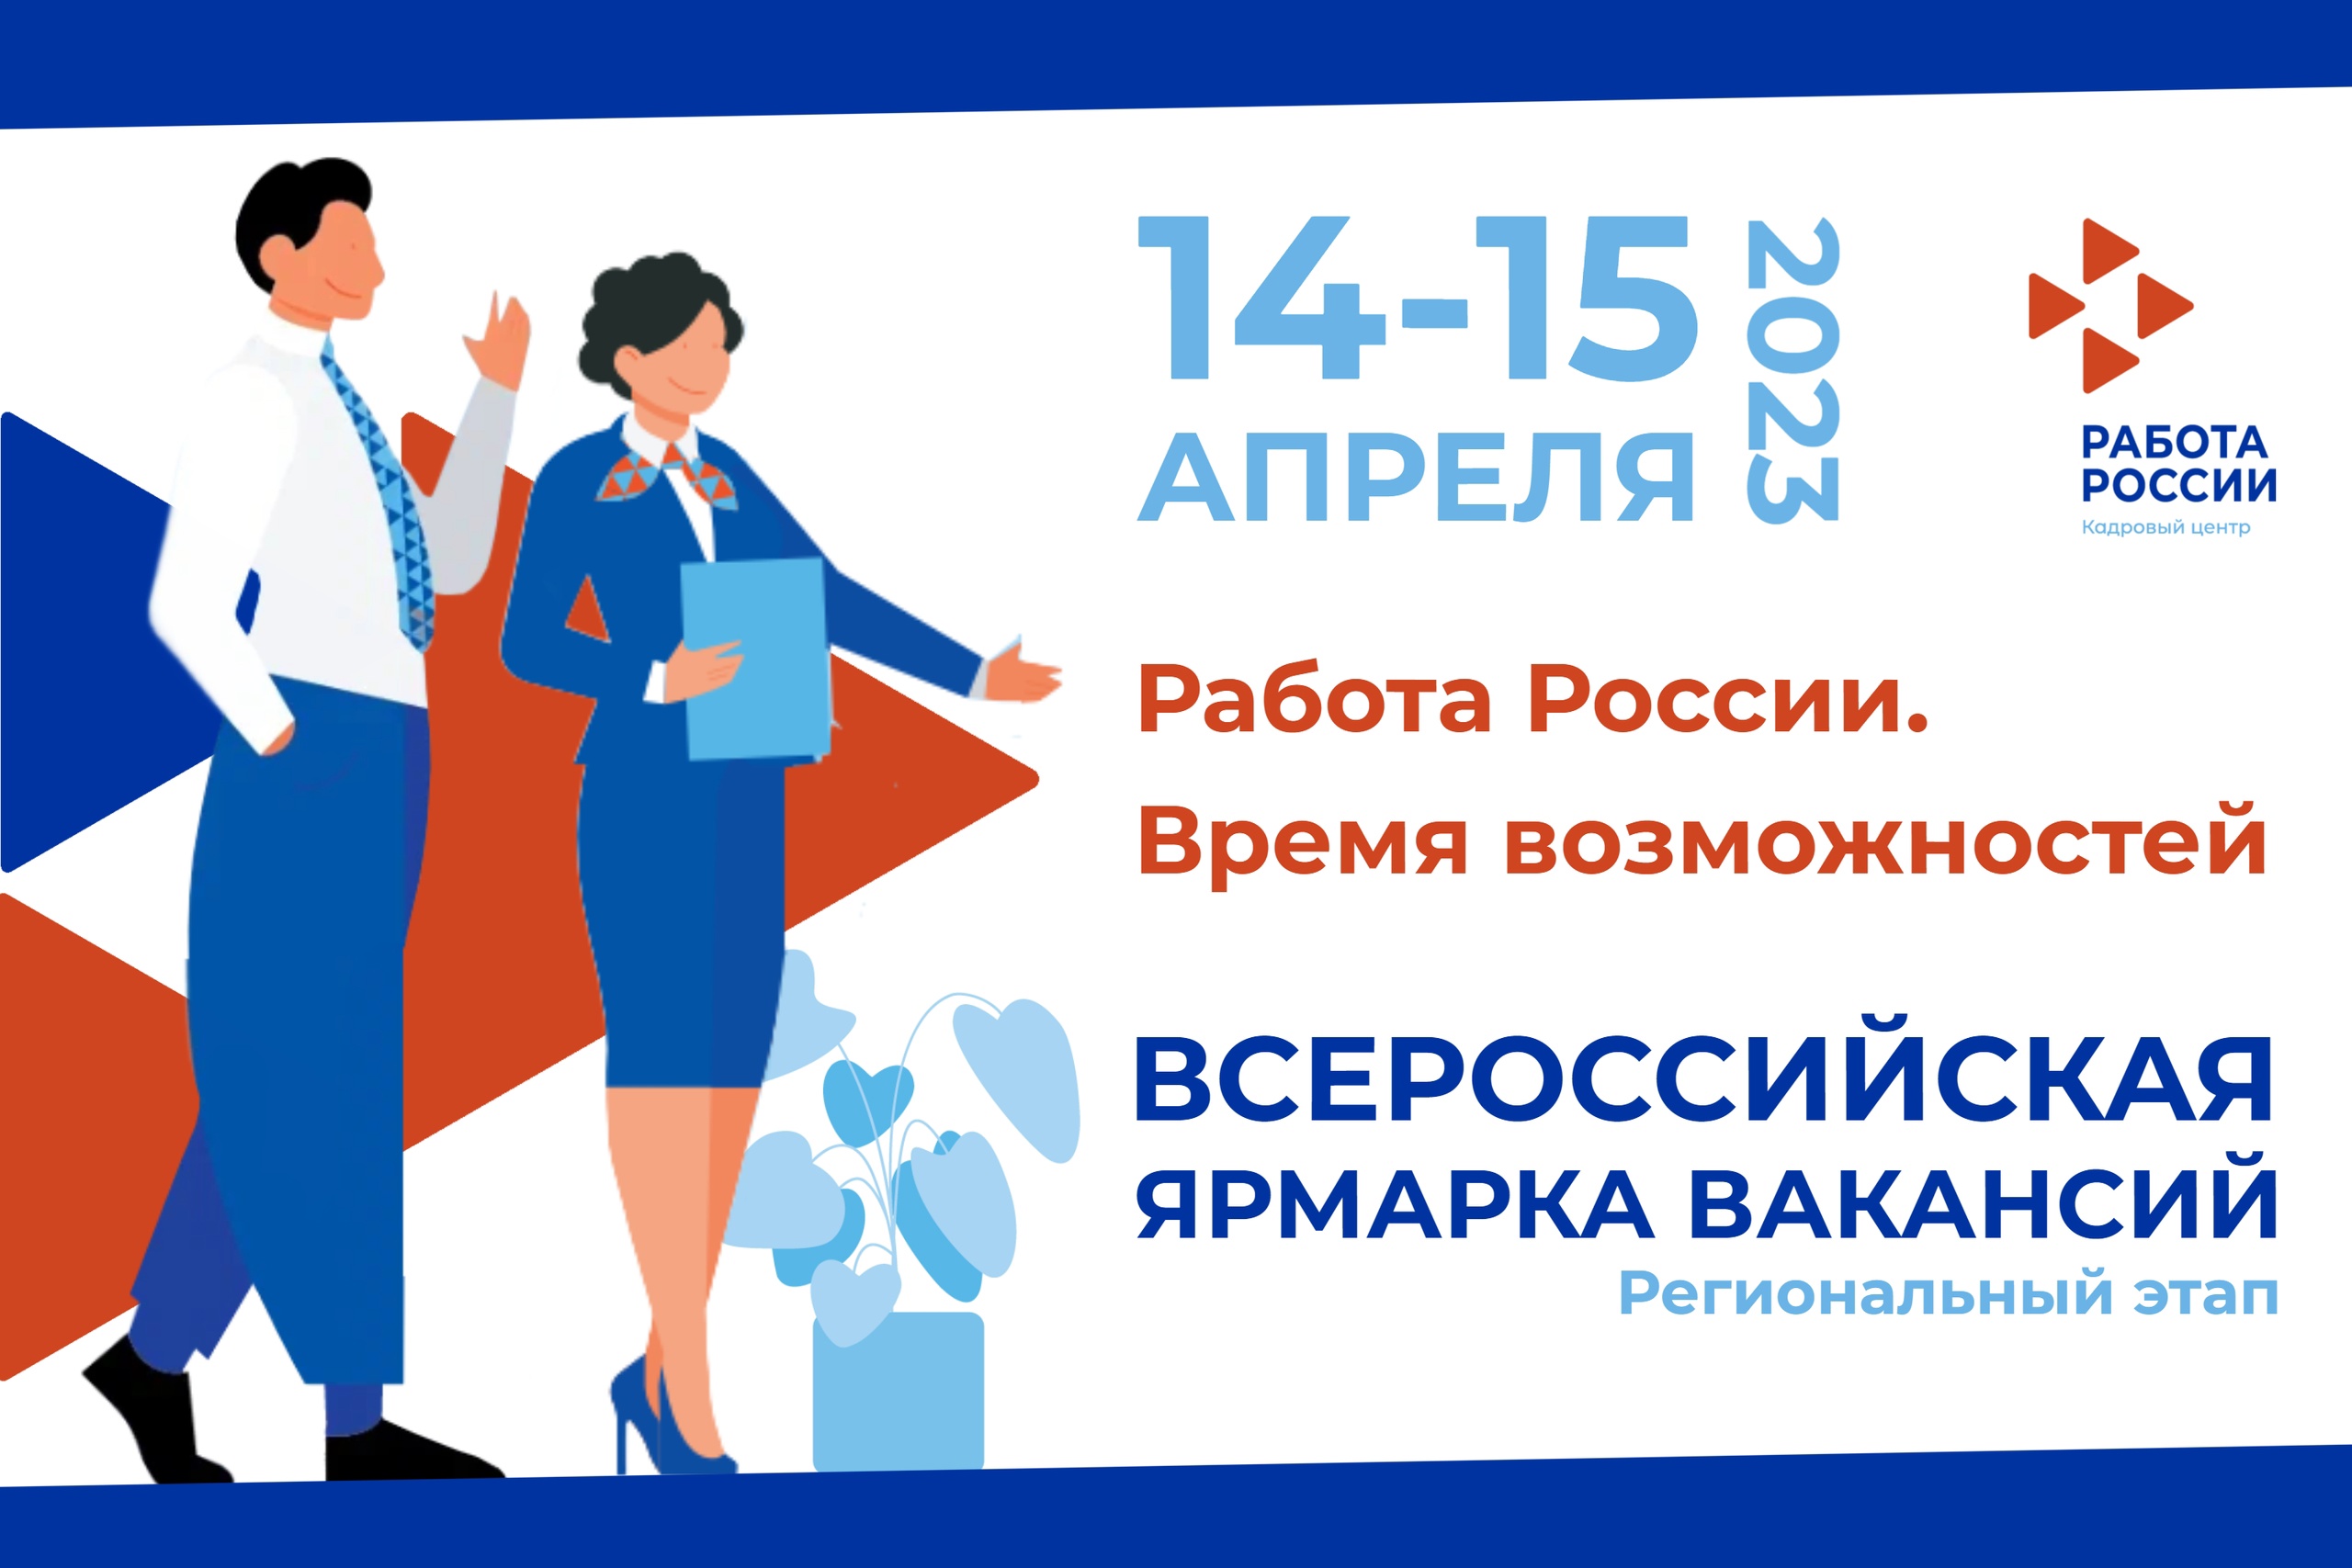 Региональный этап Всероссийской ярмарки трудоустройства пройдет в Нижегородской области 14-15 апреля